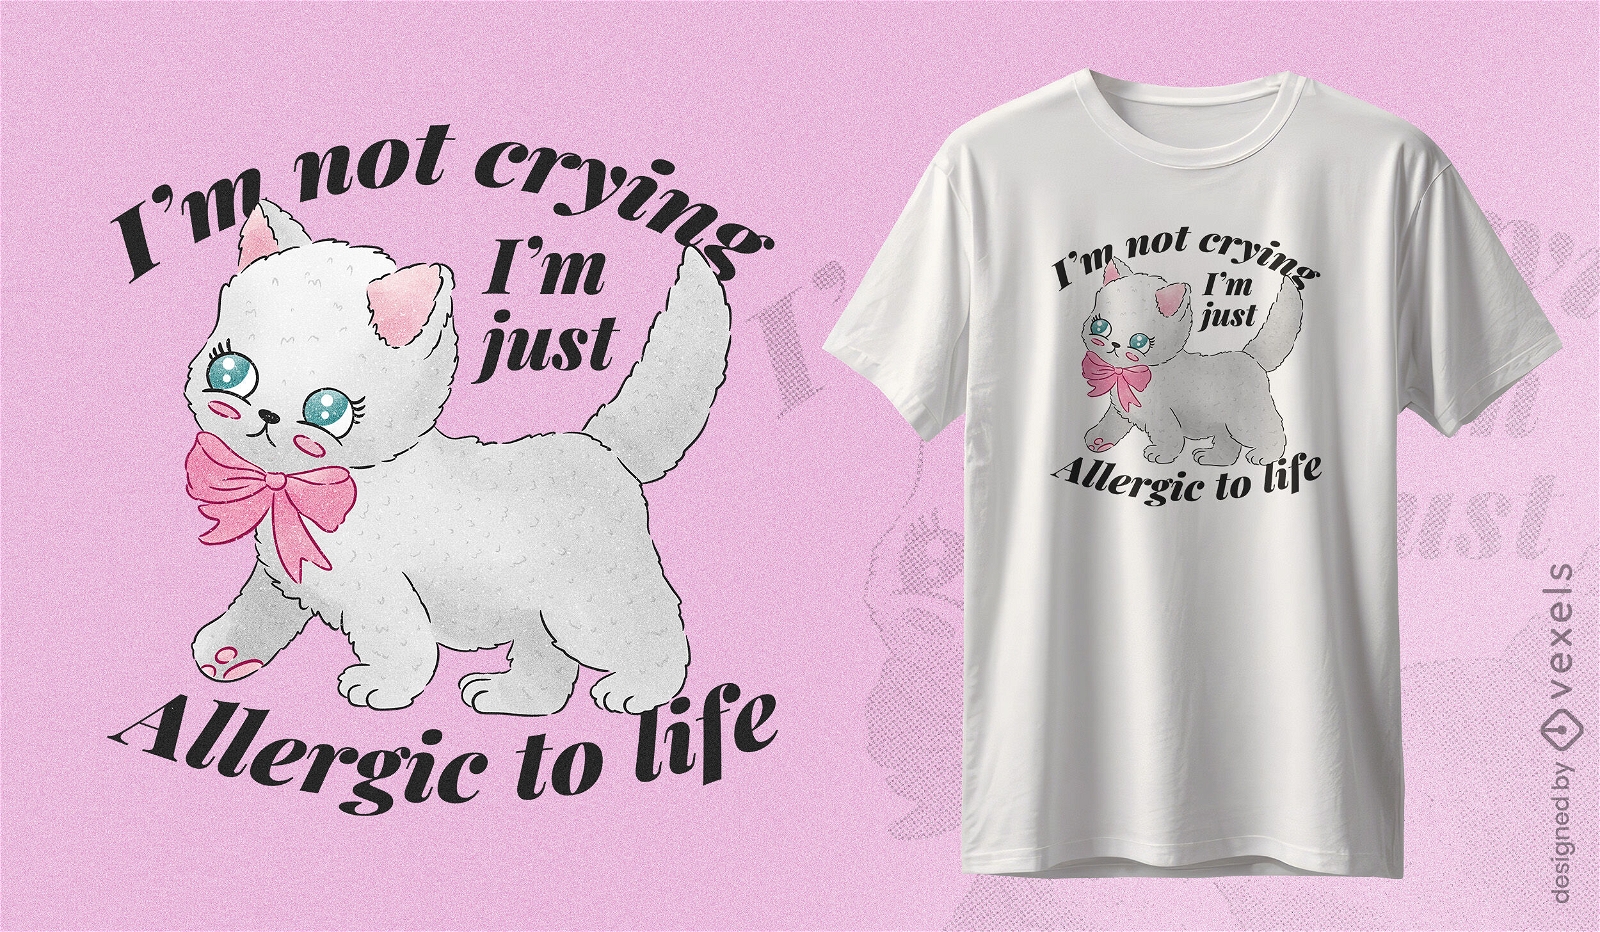 Allergic to life cat t-shirt design